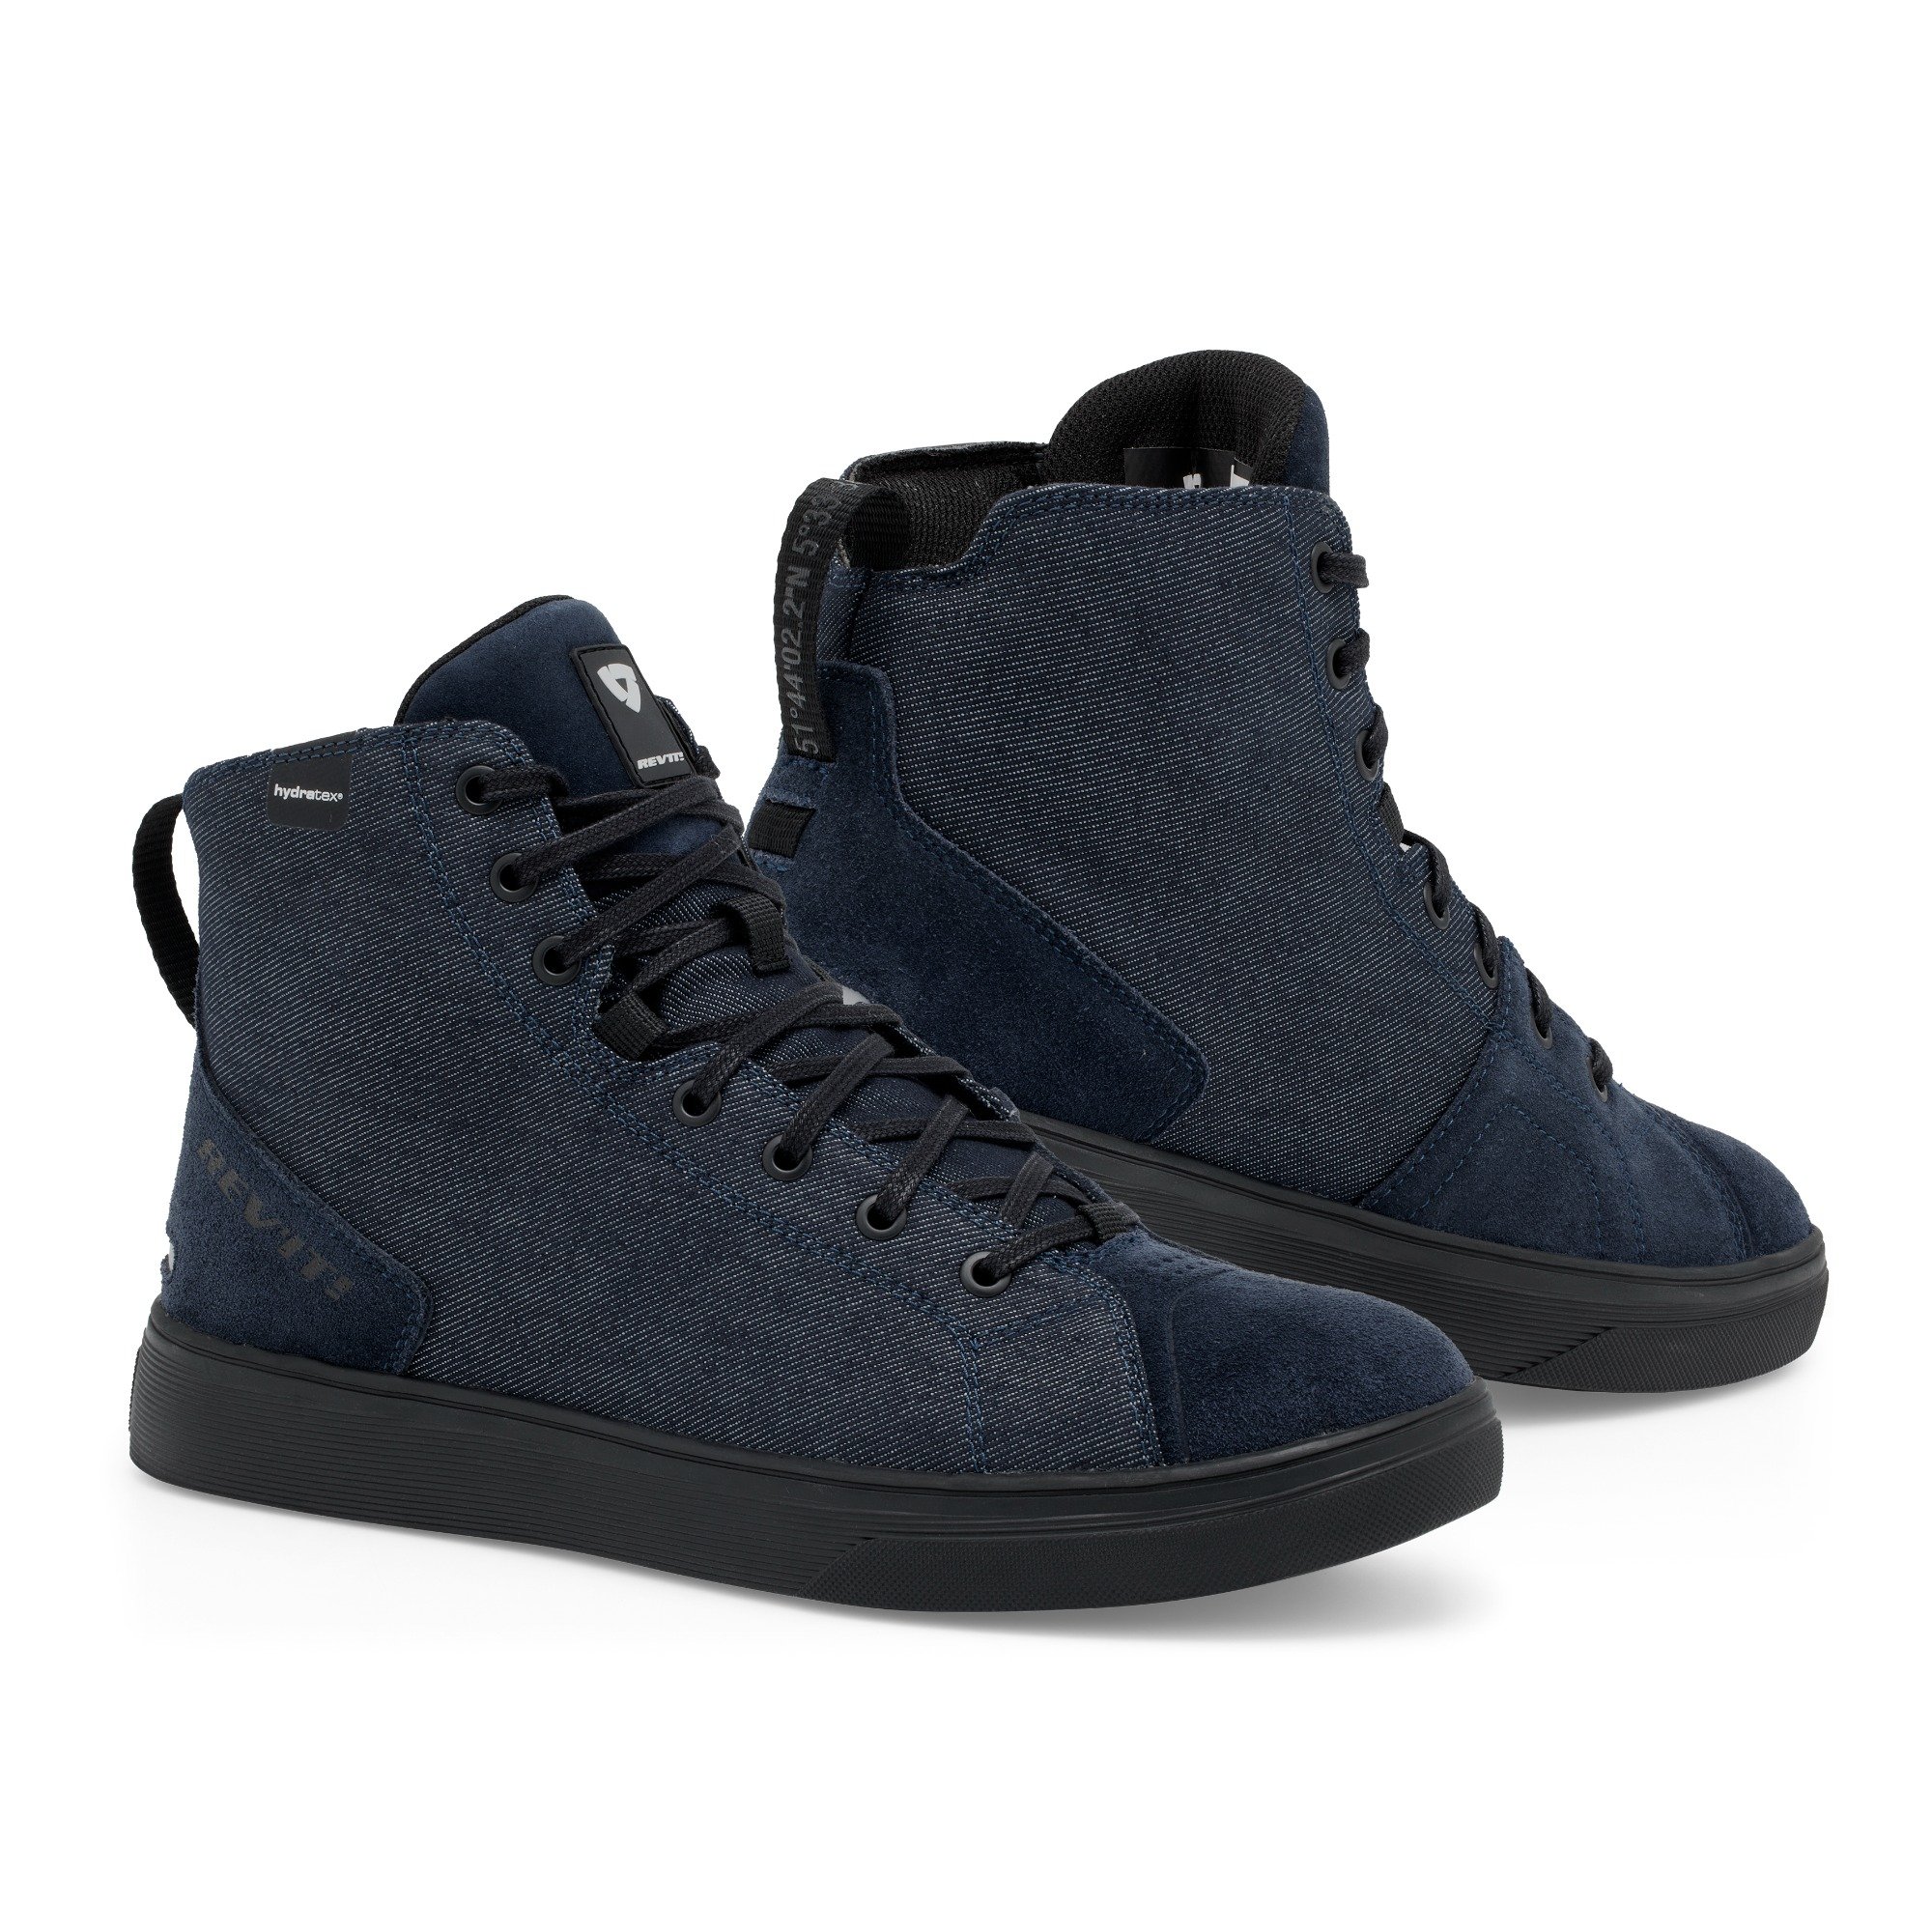 Image of REV'IT! Delta H2O Chaussures Foncé Bleu Noir Taille 41